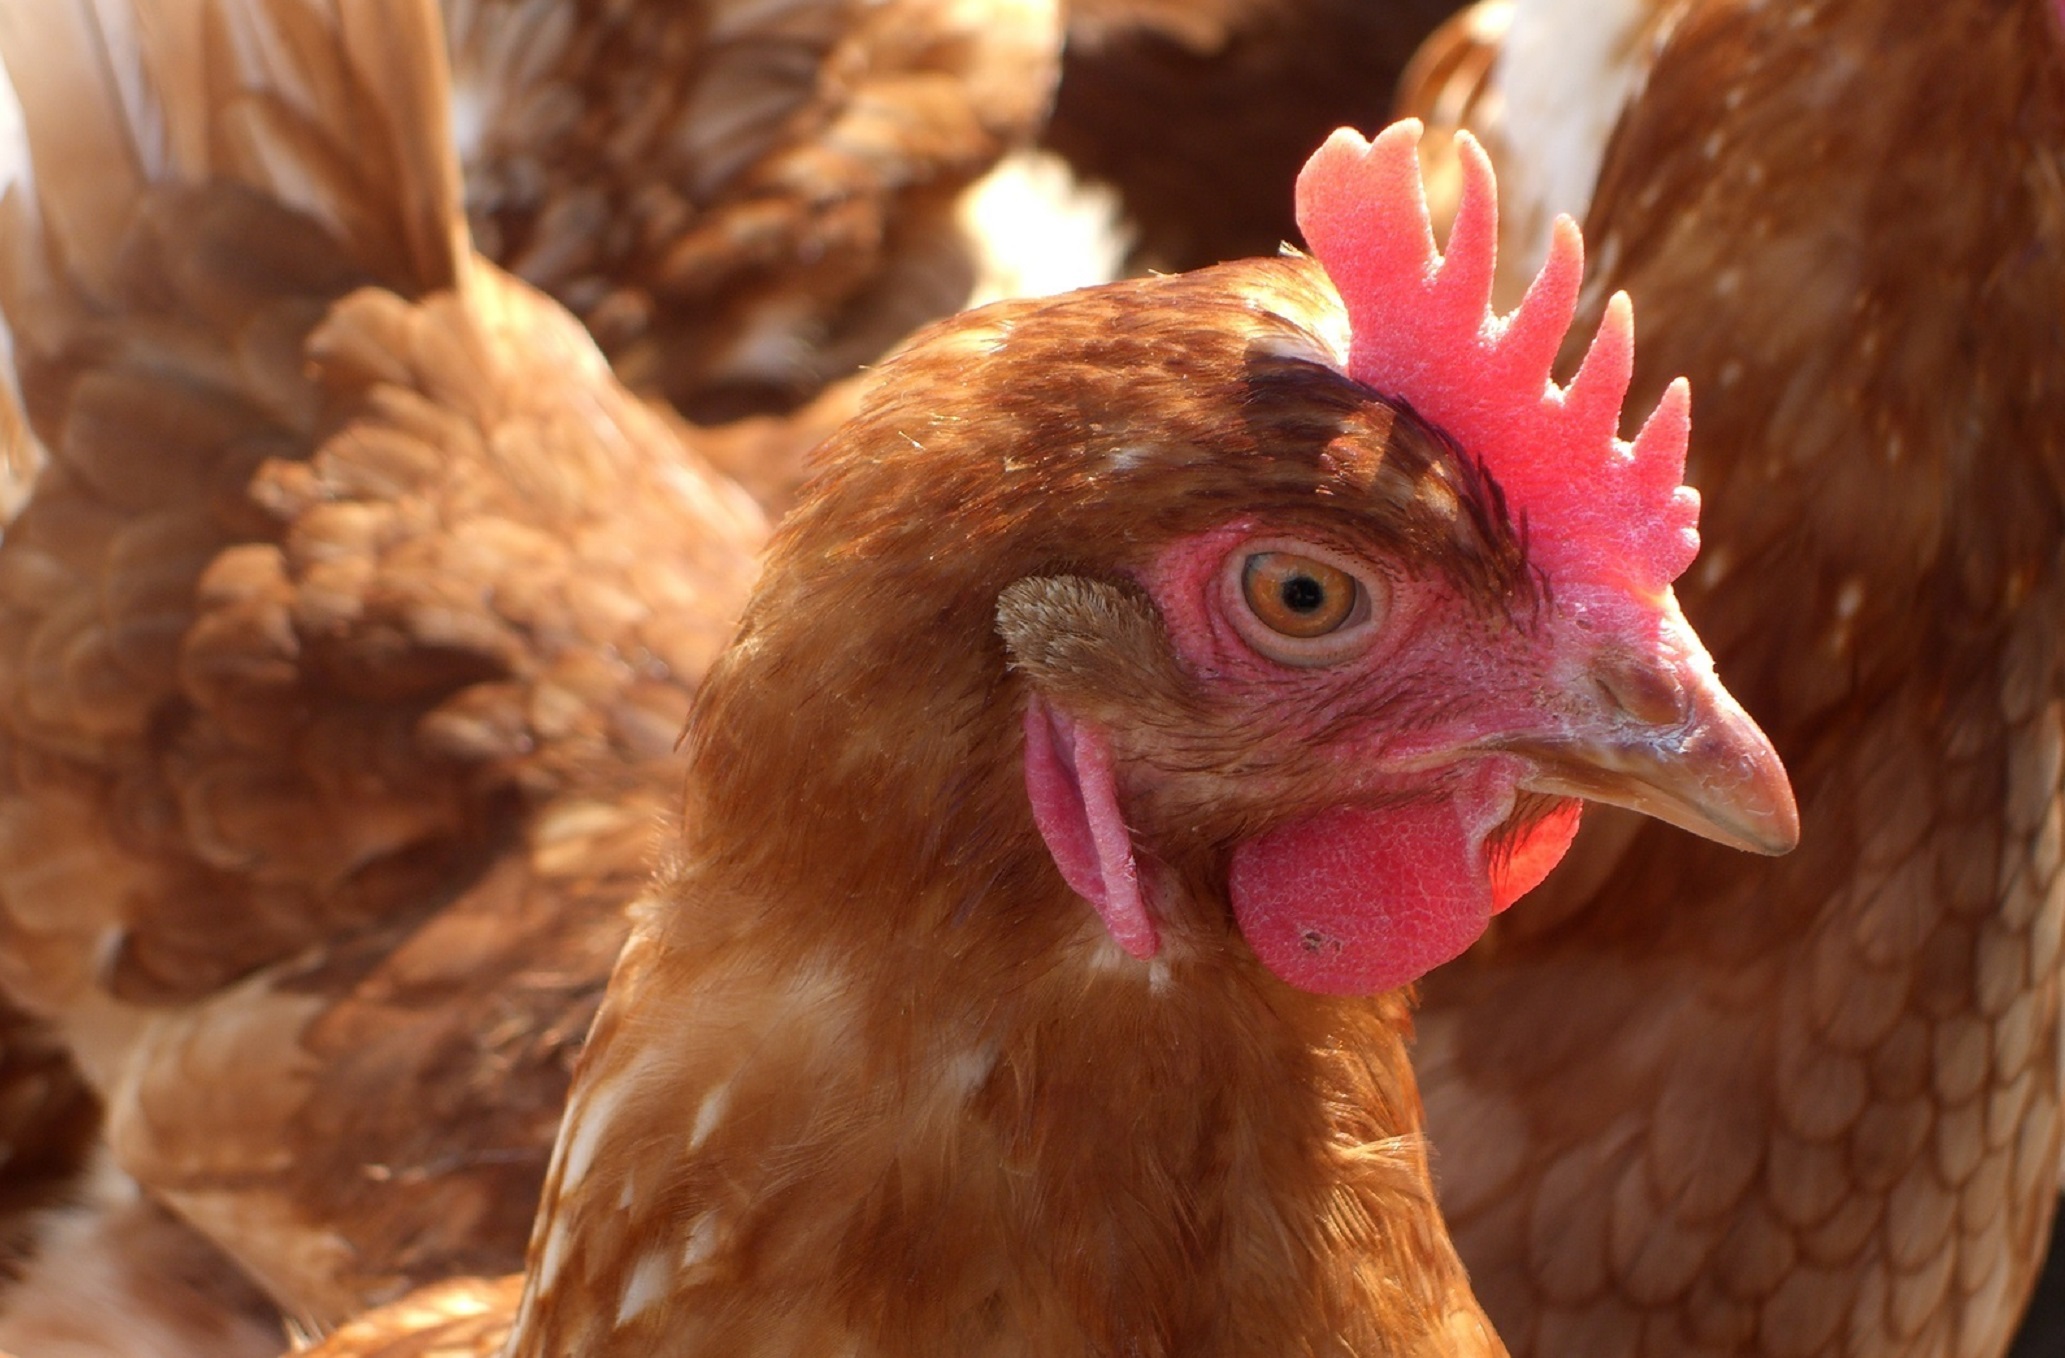 La grippe aviaire est une zoonose transmise par les oiseaux. © fuxart, Fotolia